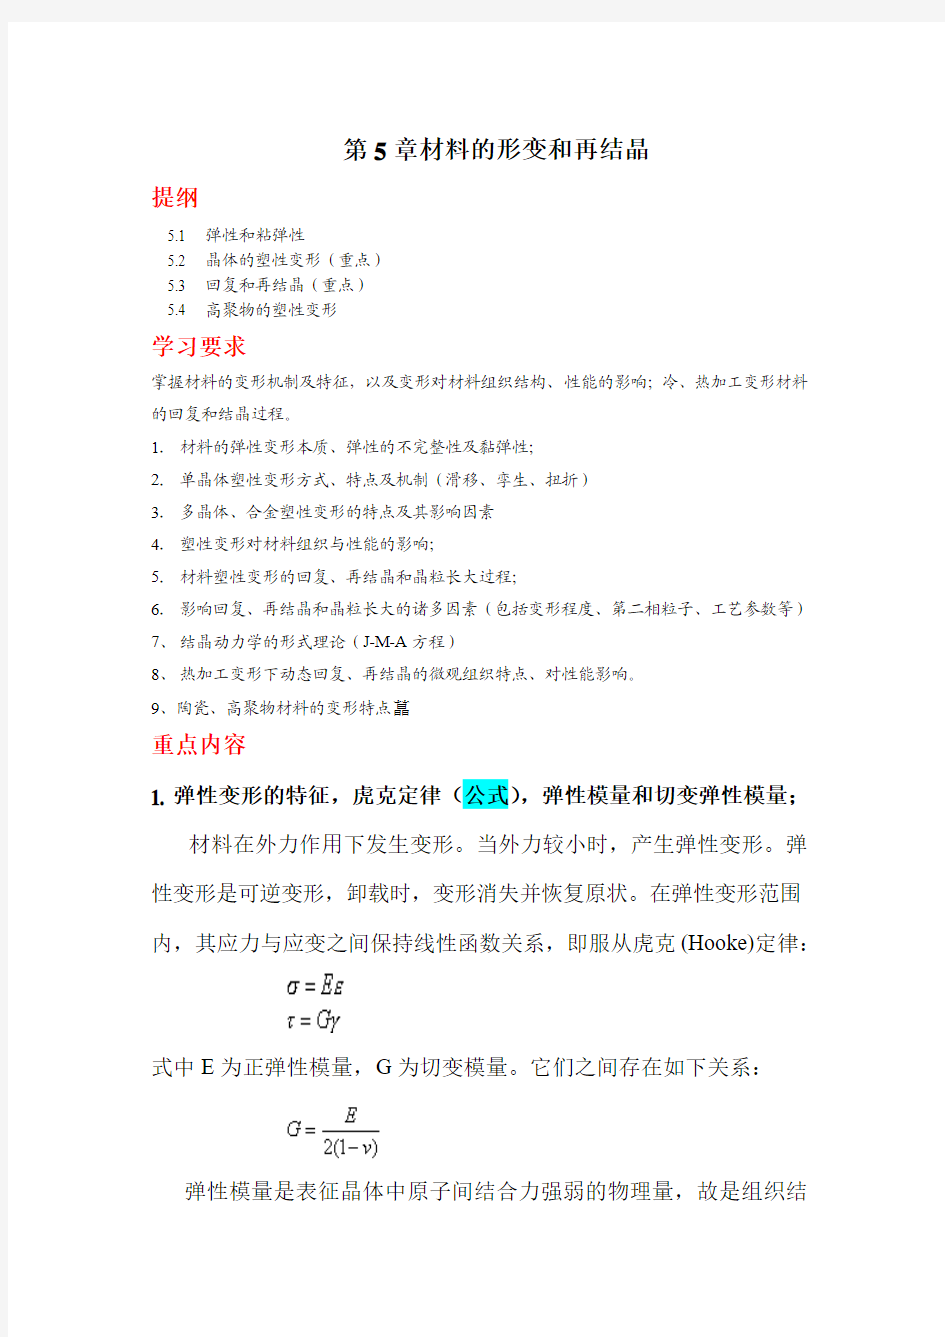 上海交大材基-第五章塑性变形与回复再结晶--复习提纲.